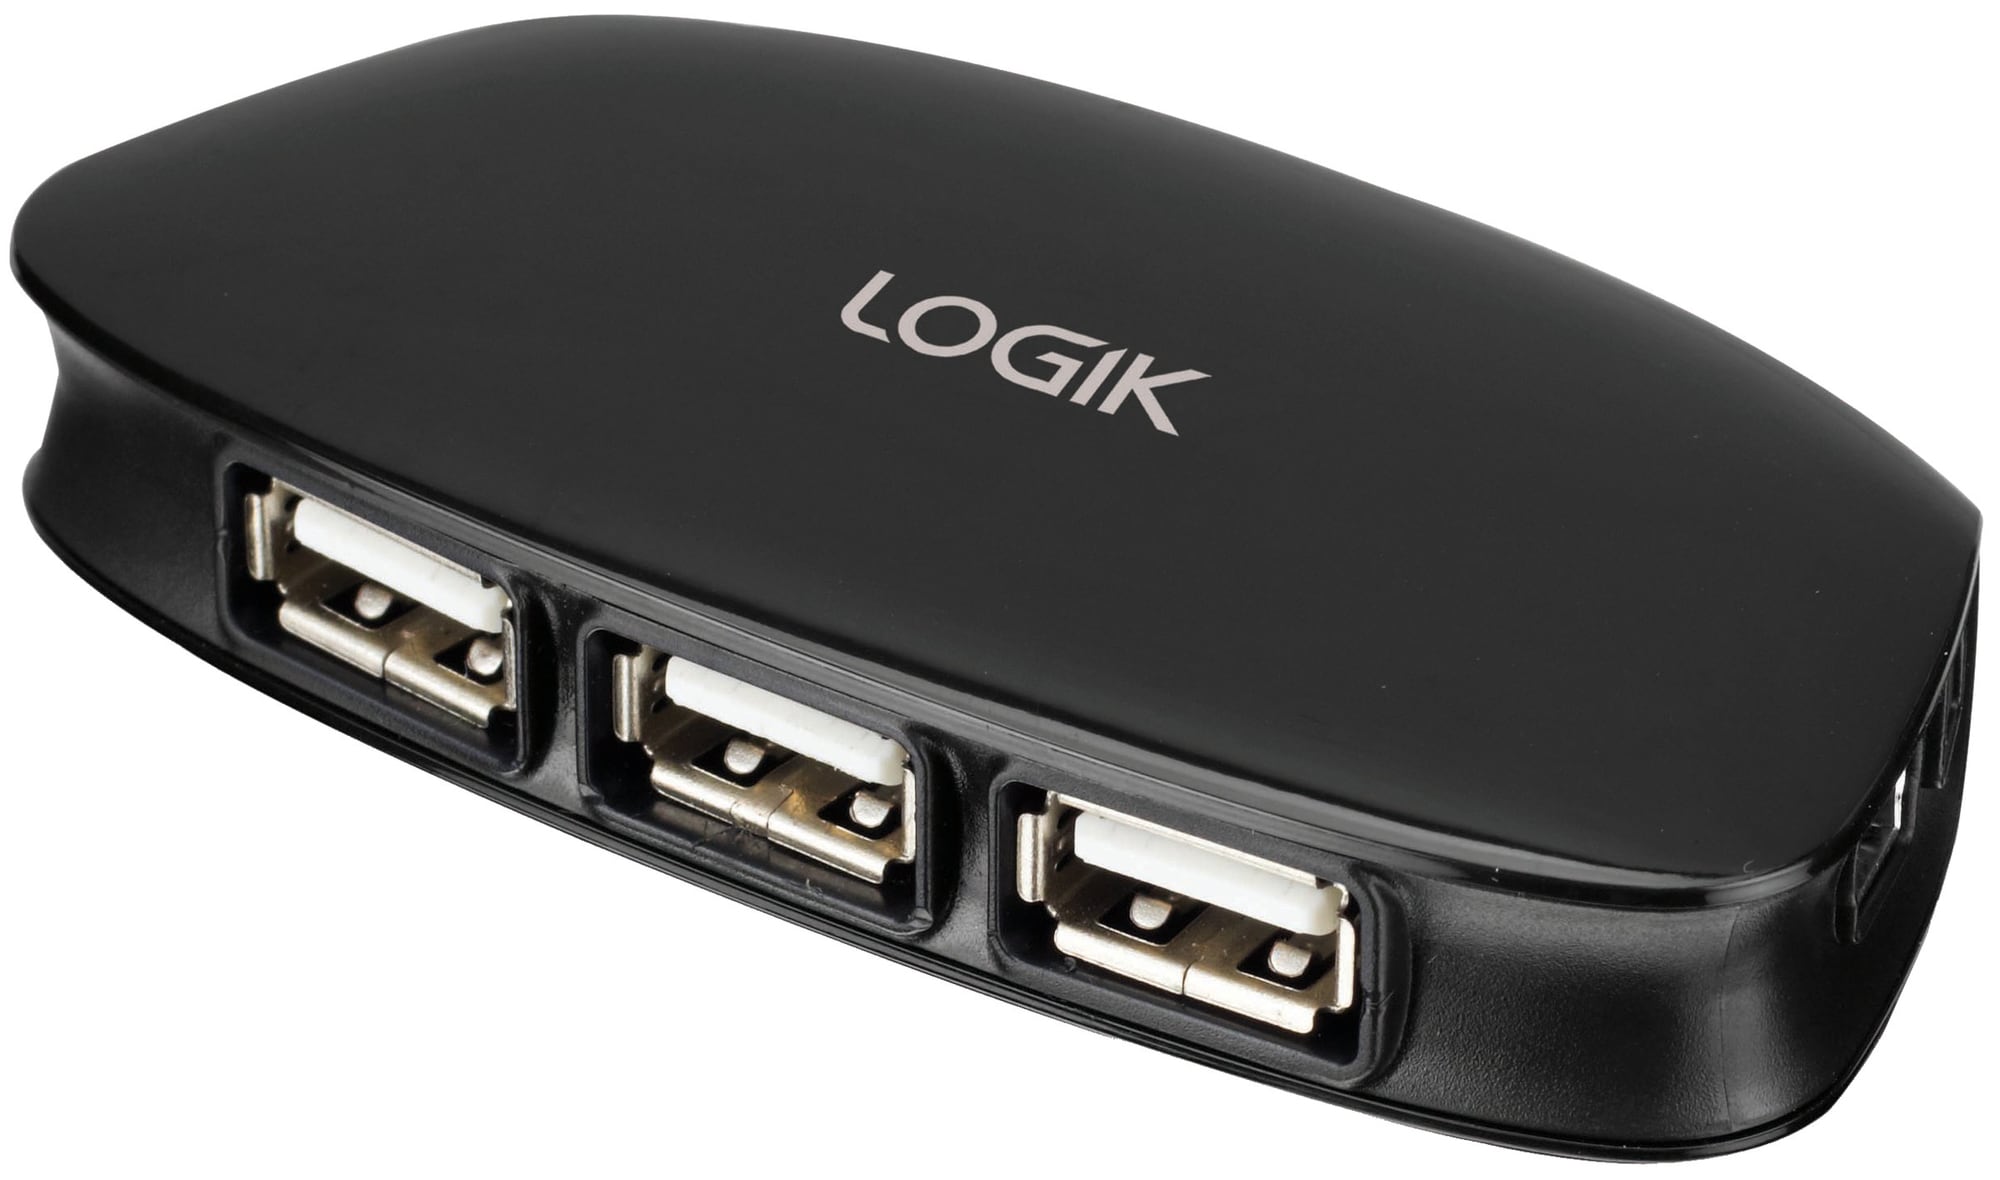 Mange Burger Og Logik 4-port USB 2.0 hub | Elgiganten